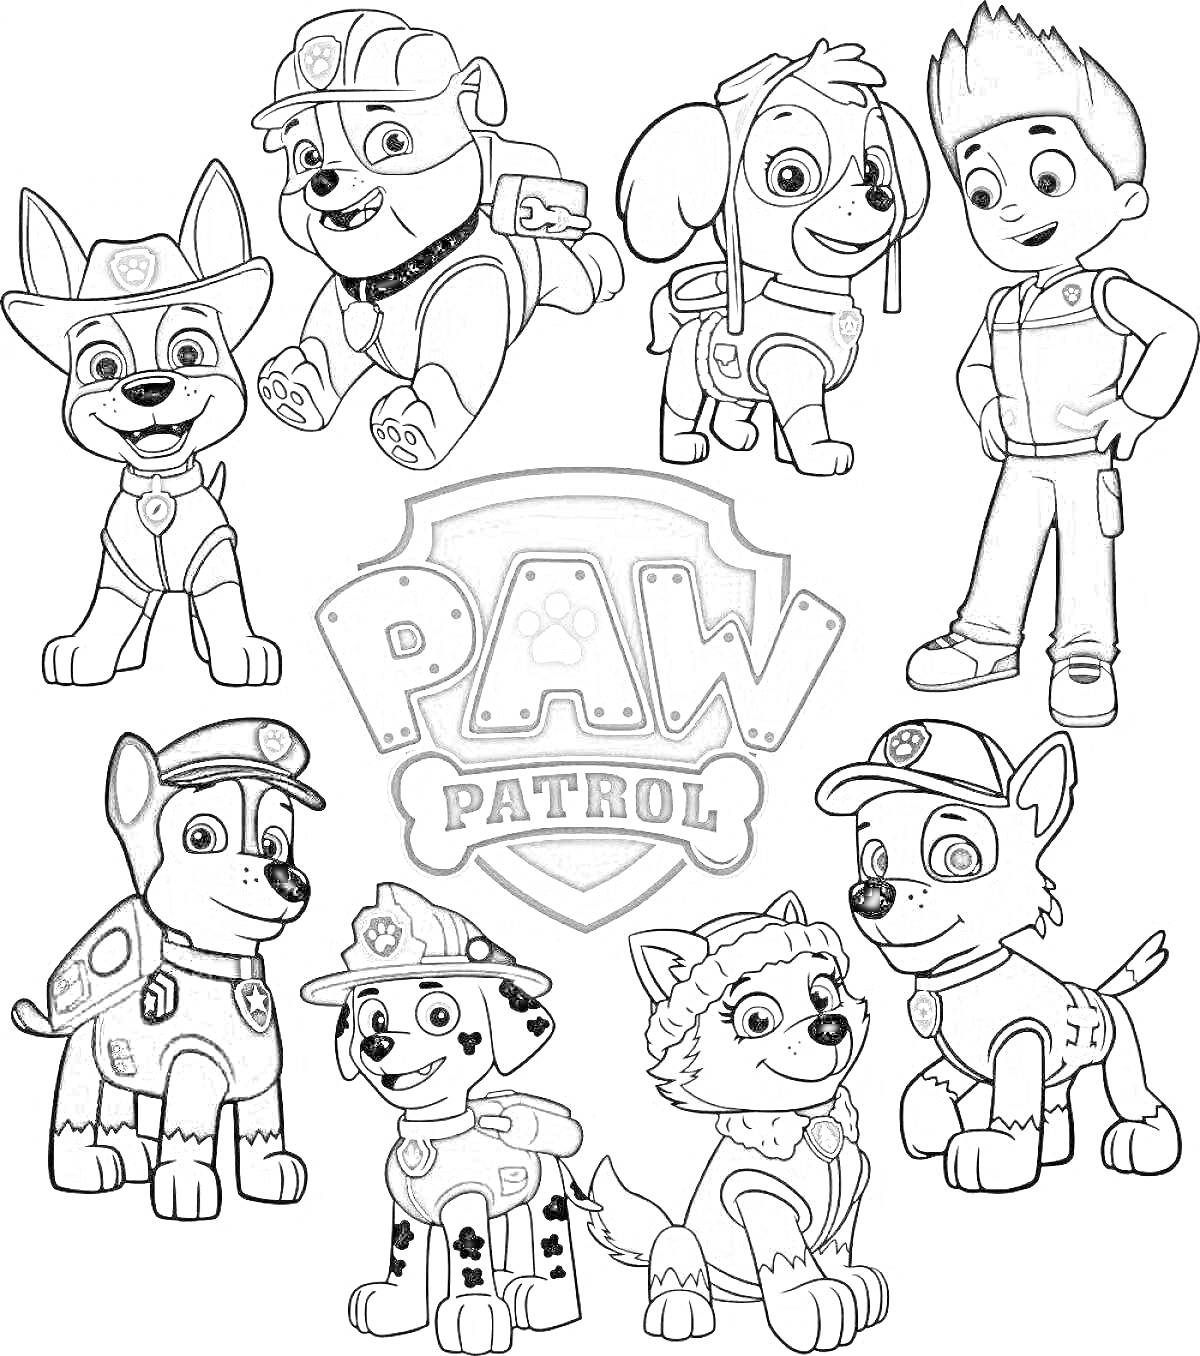 Раскраска Щенячий патруль с центральным логотипом и всеми персонажами (8 персонажей: 7 щенков и один человек)